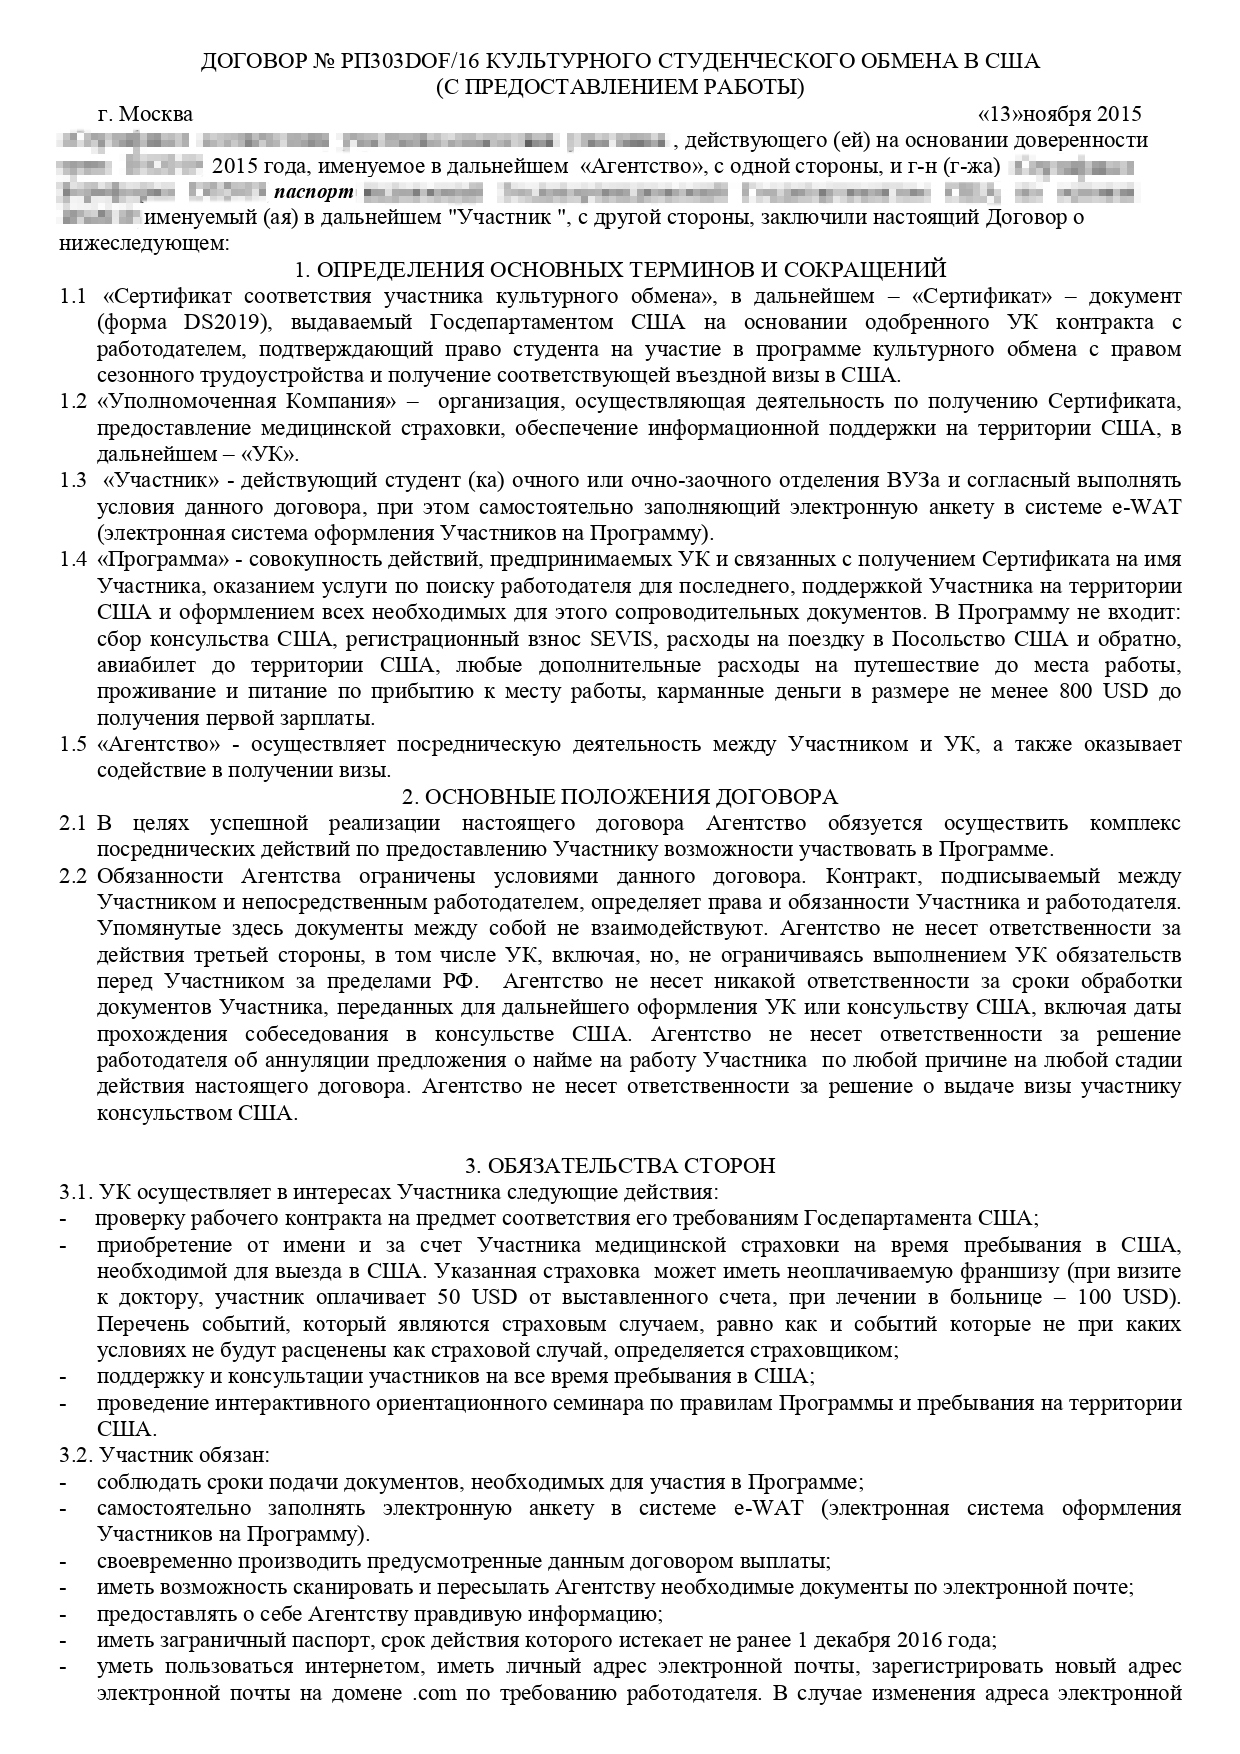 Мой договор на программу «Ворк-энд-тревел» перед поездкой в Буллфрог. Стоимость программы по нему — 1200 $